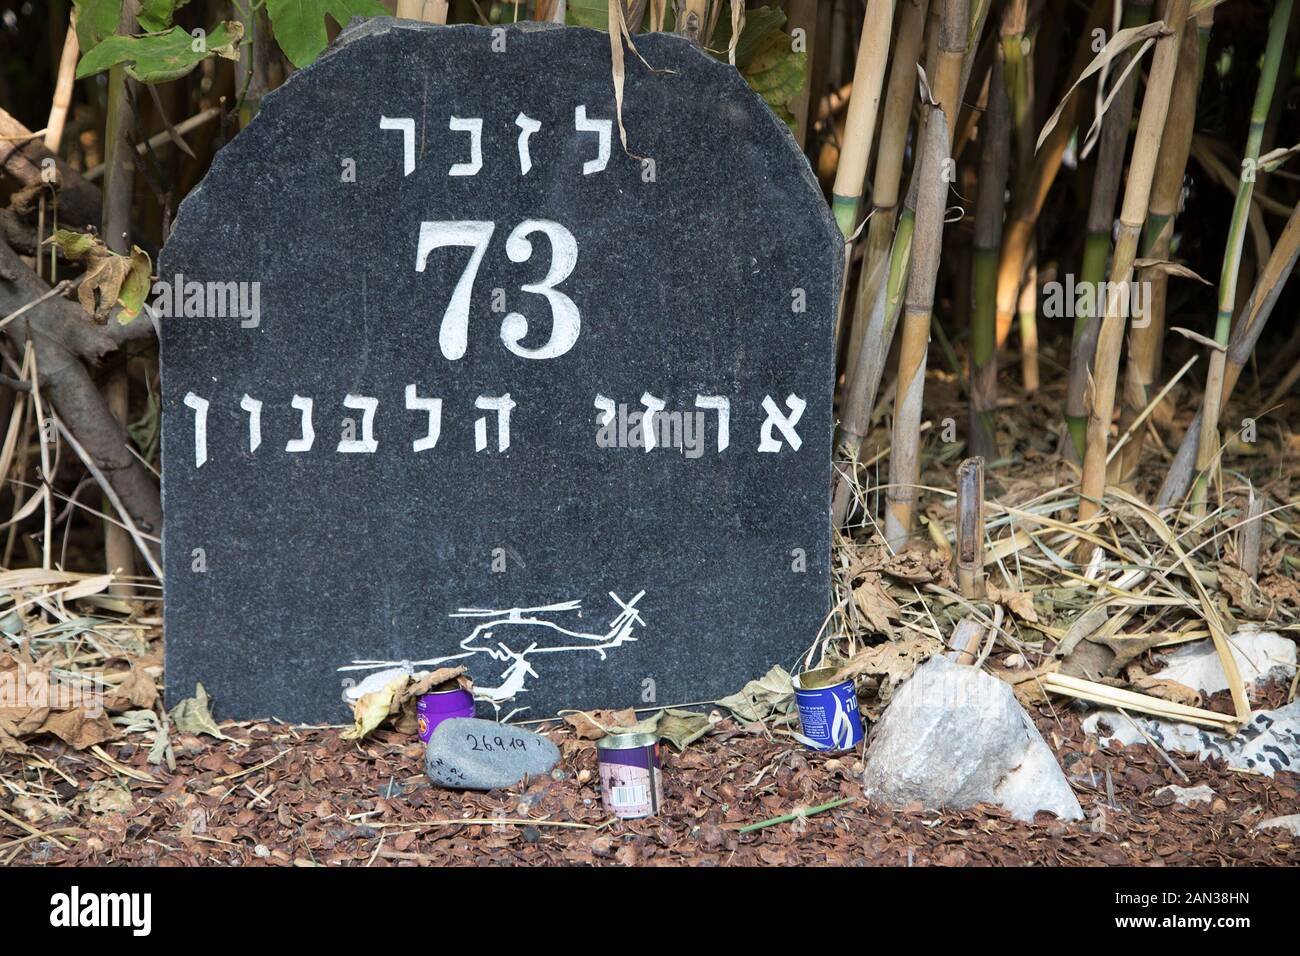 Memoriale per commemorare i 73 soldati morti nel disastro dell'elicottero del 1997, Dafna, Israele Foto Stock